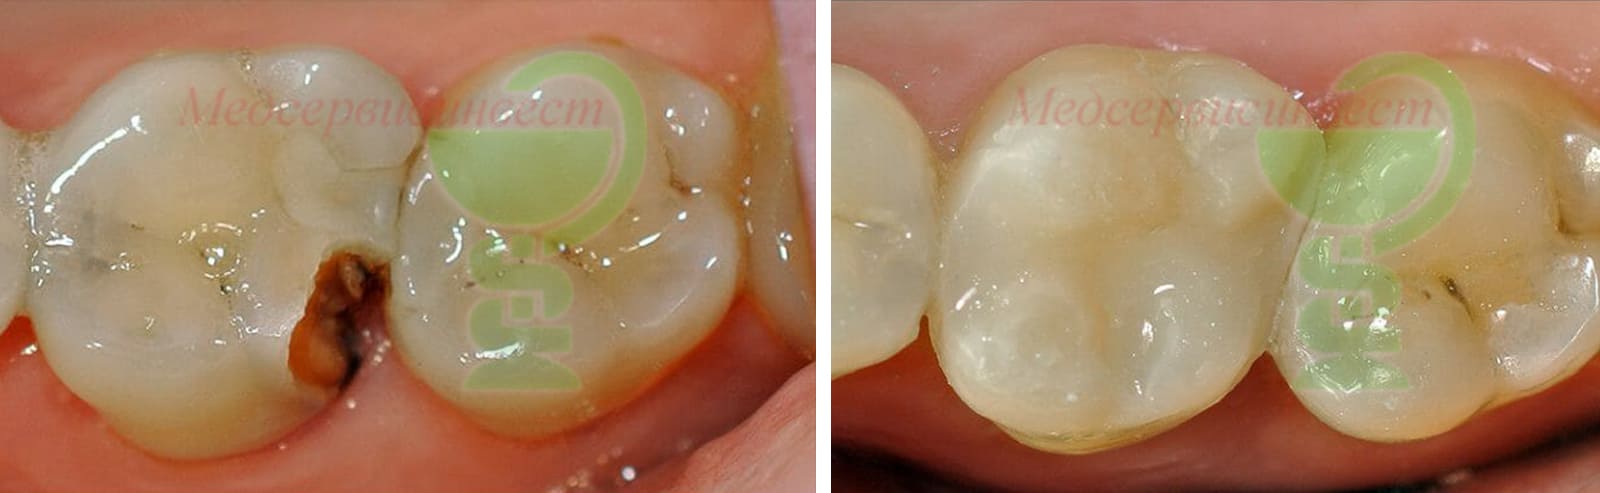 Современное лечение кариеса зубов в стоматологии Минска фото до и после